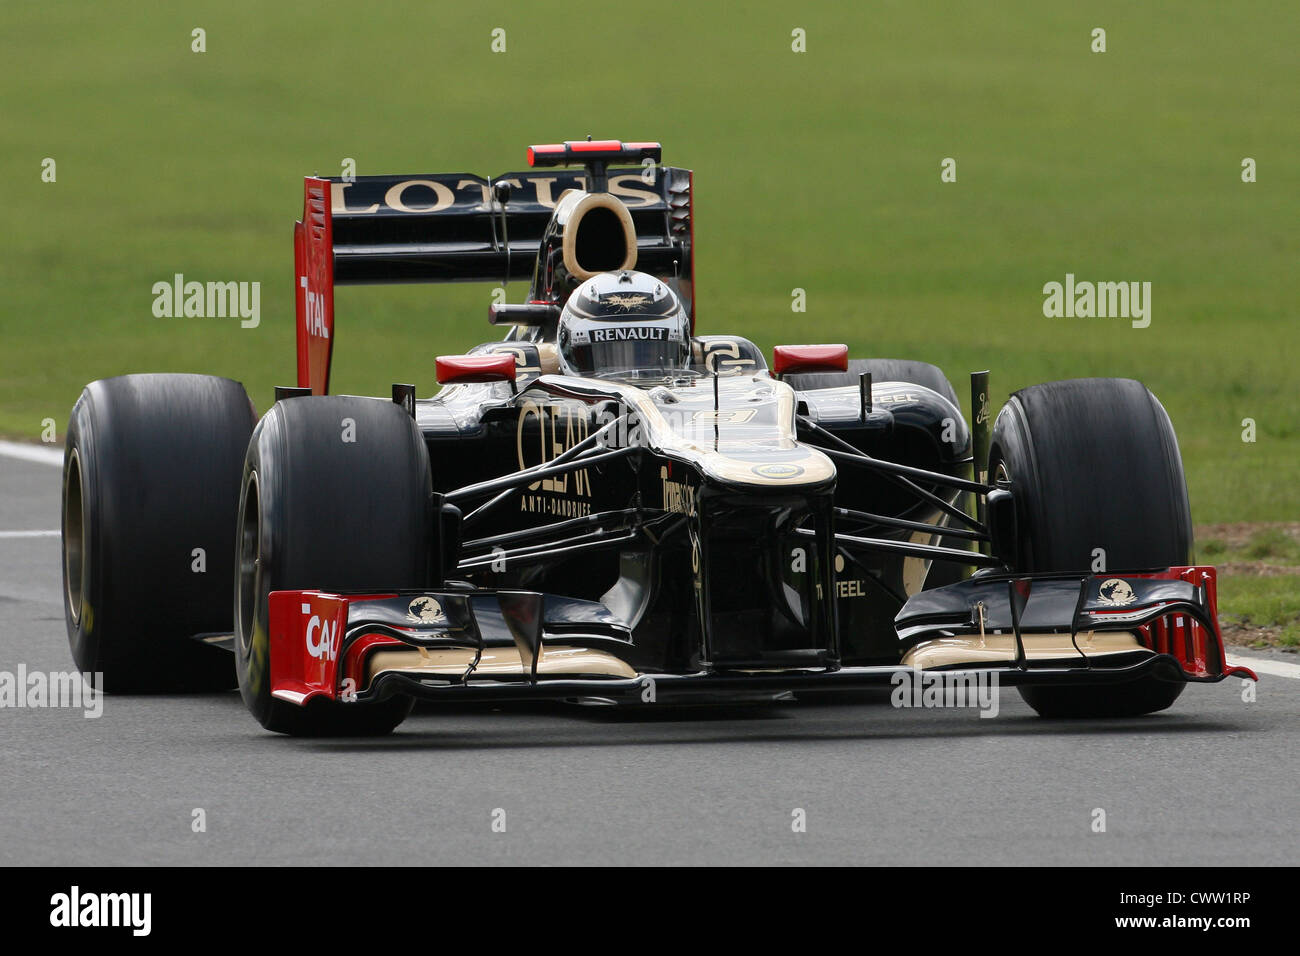 Kimi Raikkonen (Lotus F1) Gran Premio de Gran Bretaña en Silverstone, Reino Unido. Fórmula Uno, F1 Foto de stock